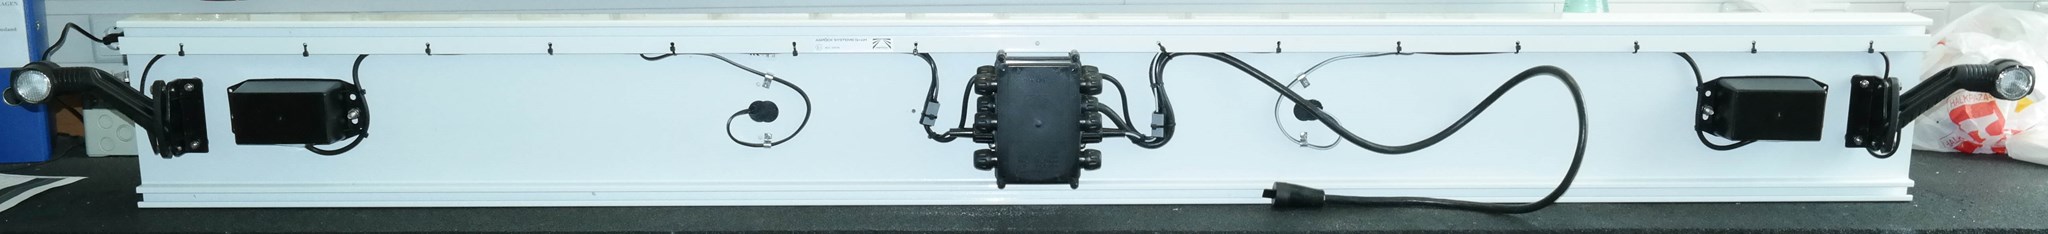 Image de 97-1190-007C Aspöck ALU Unterfahrschutz weiß Europoint III, Superpoint III LED